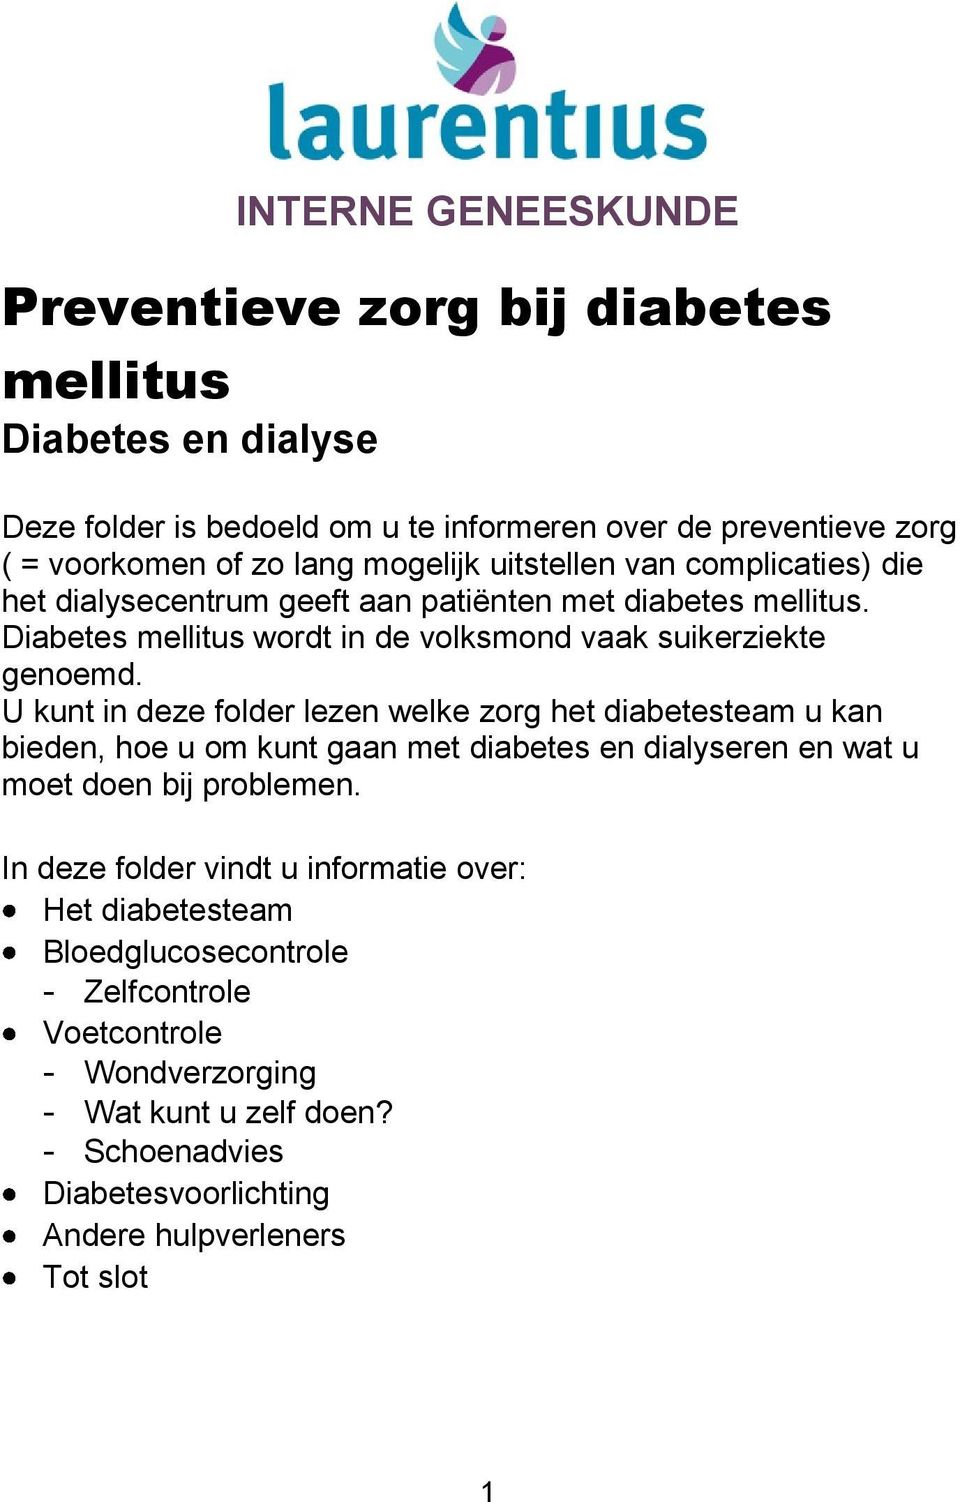 U kunt in deze folder lezen welke zorg het diabetesteam u kan bieden, hoe u om kunt gaan met diabetes en dialyseren en wat u moet doen bij problemen.